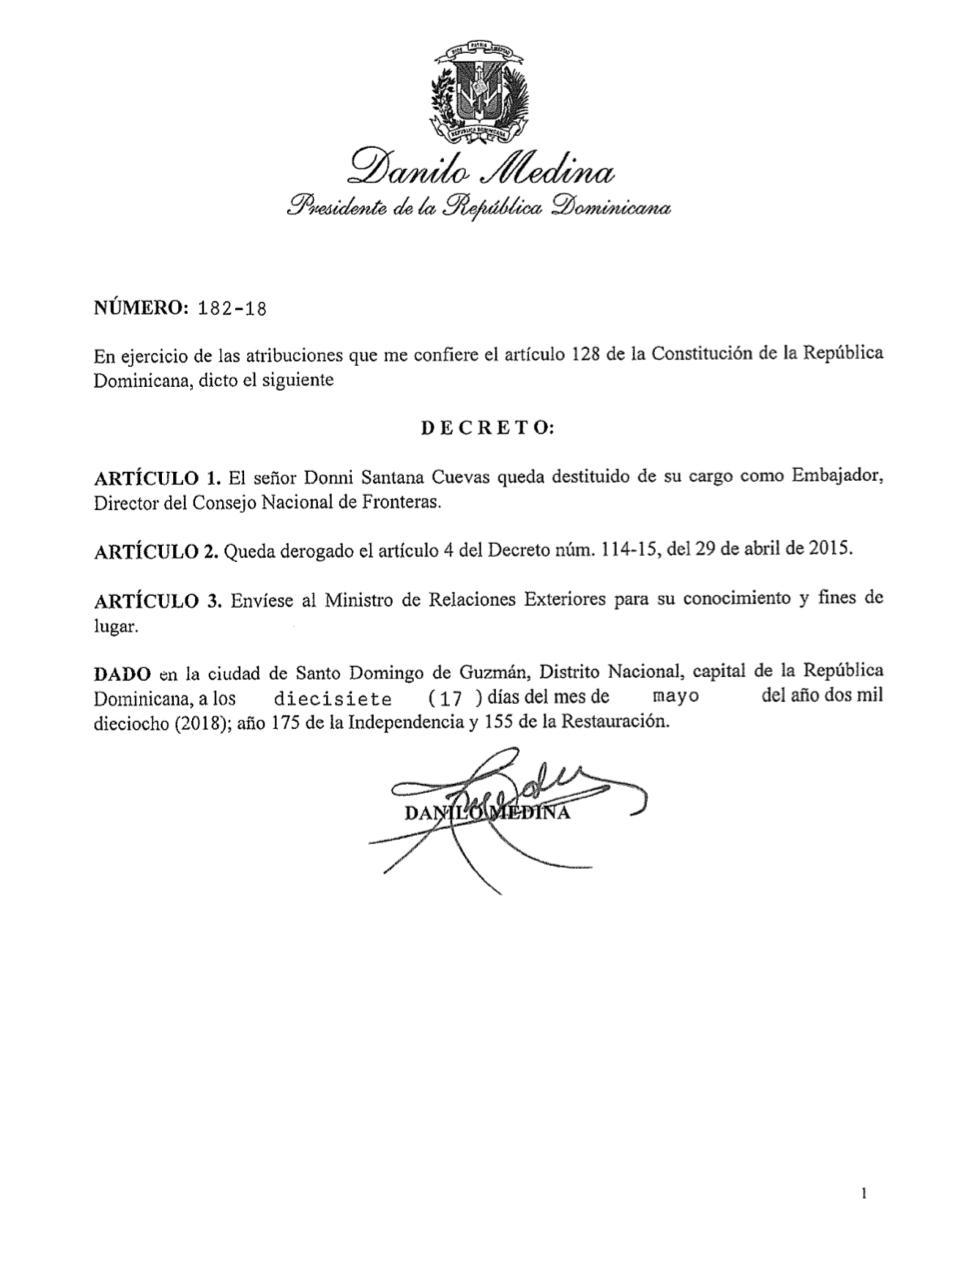 Decreto 182-18 con el que el presidente Danilo Medina destituye al embajador Dionni Santana Cuevas